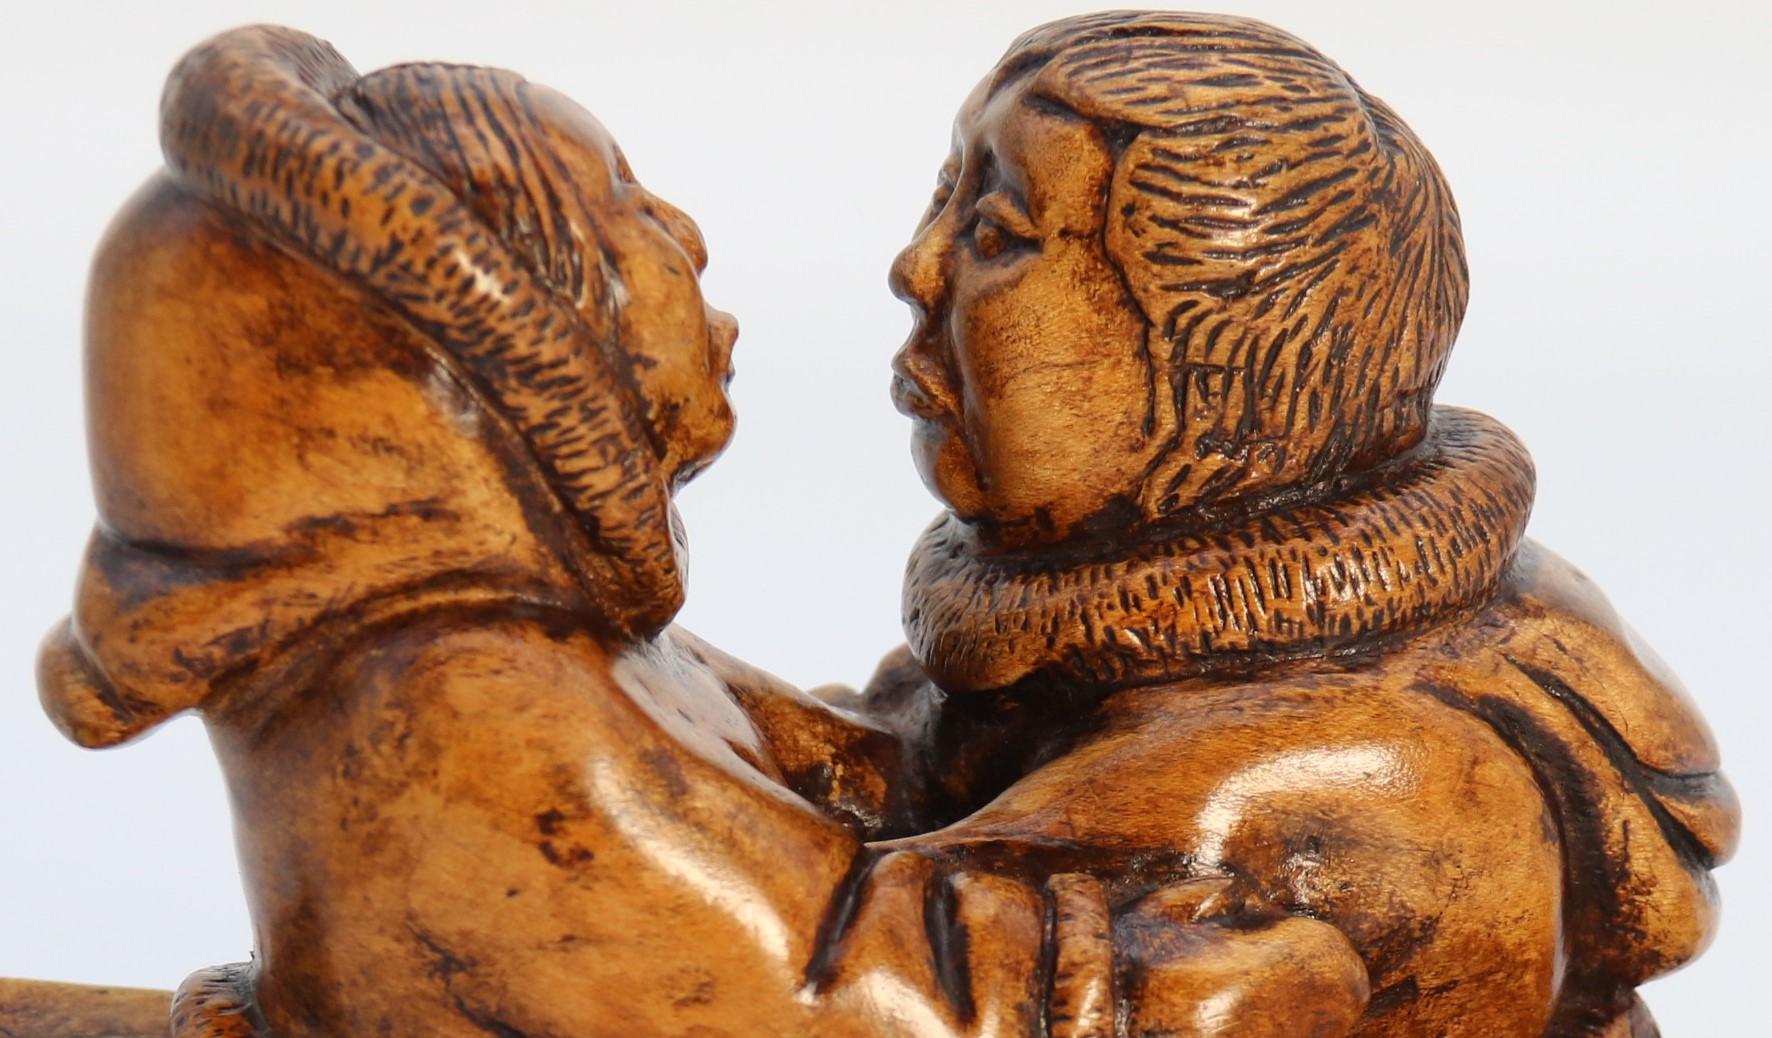 
Ce superbe groupe de figurines rares est une œuvre d'art populaire canadien. Il est magnifiquement sculpté à la main dans du bois d'érable jaune canadien, un bois lourd et dense. Elle représente deux jeunes autochtones de la région arctique du